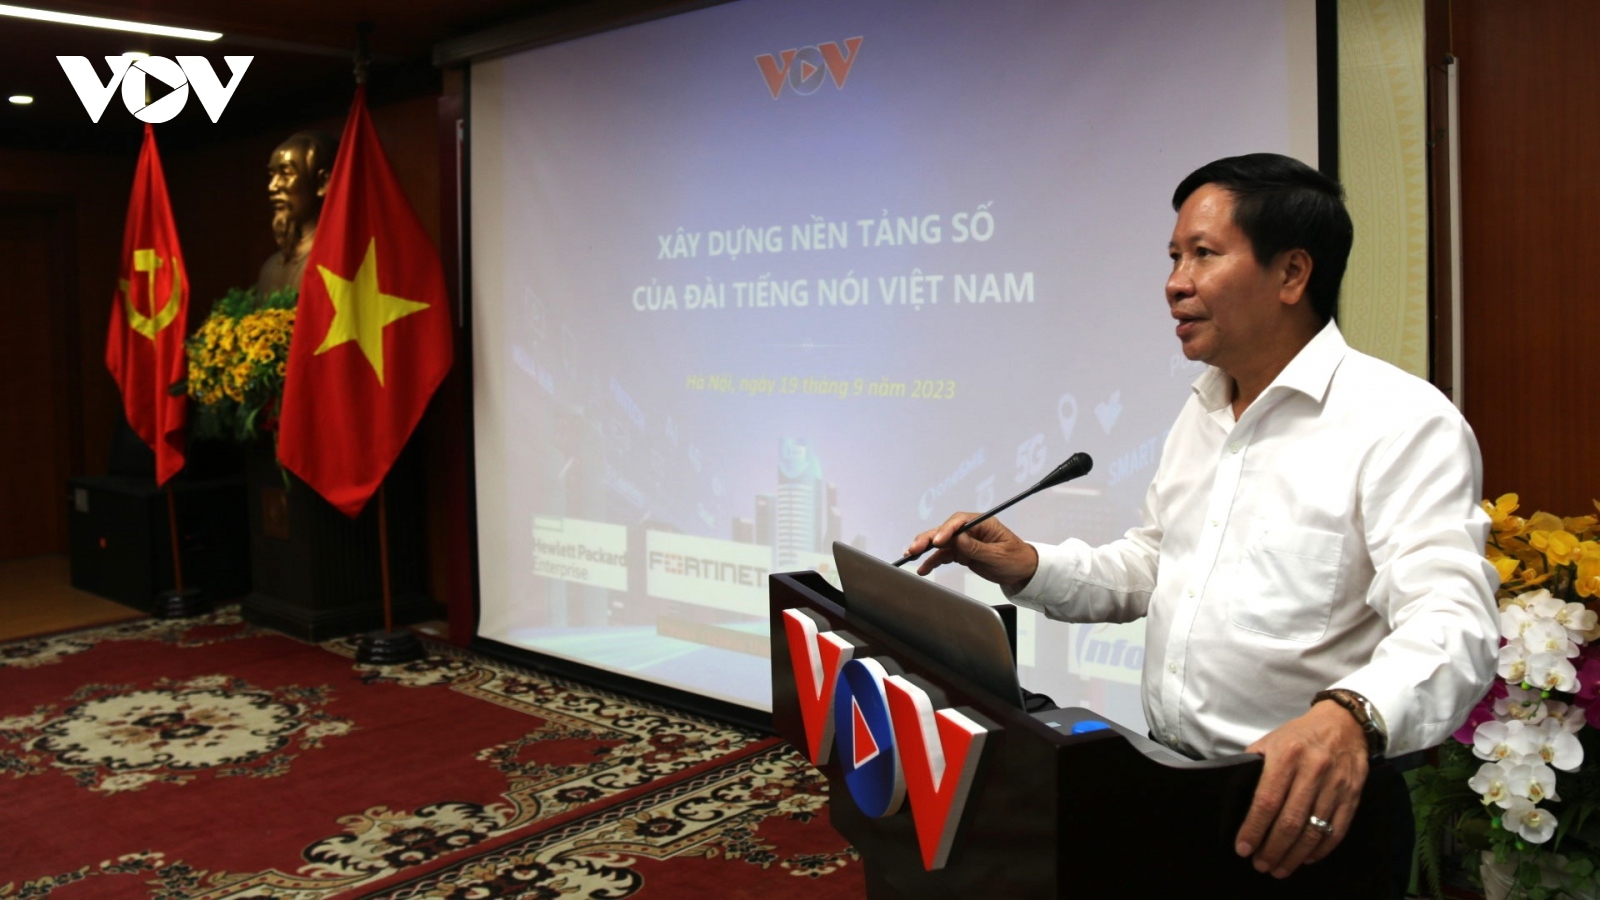 Xây dựng nền tảng số của Đài Tiếng nói Việt Nam